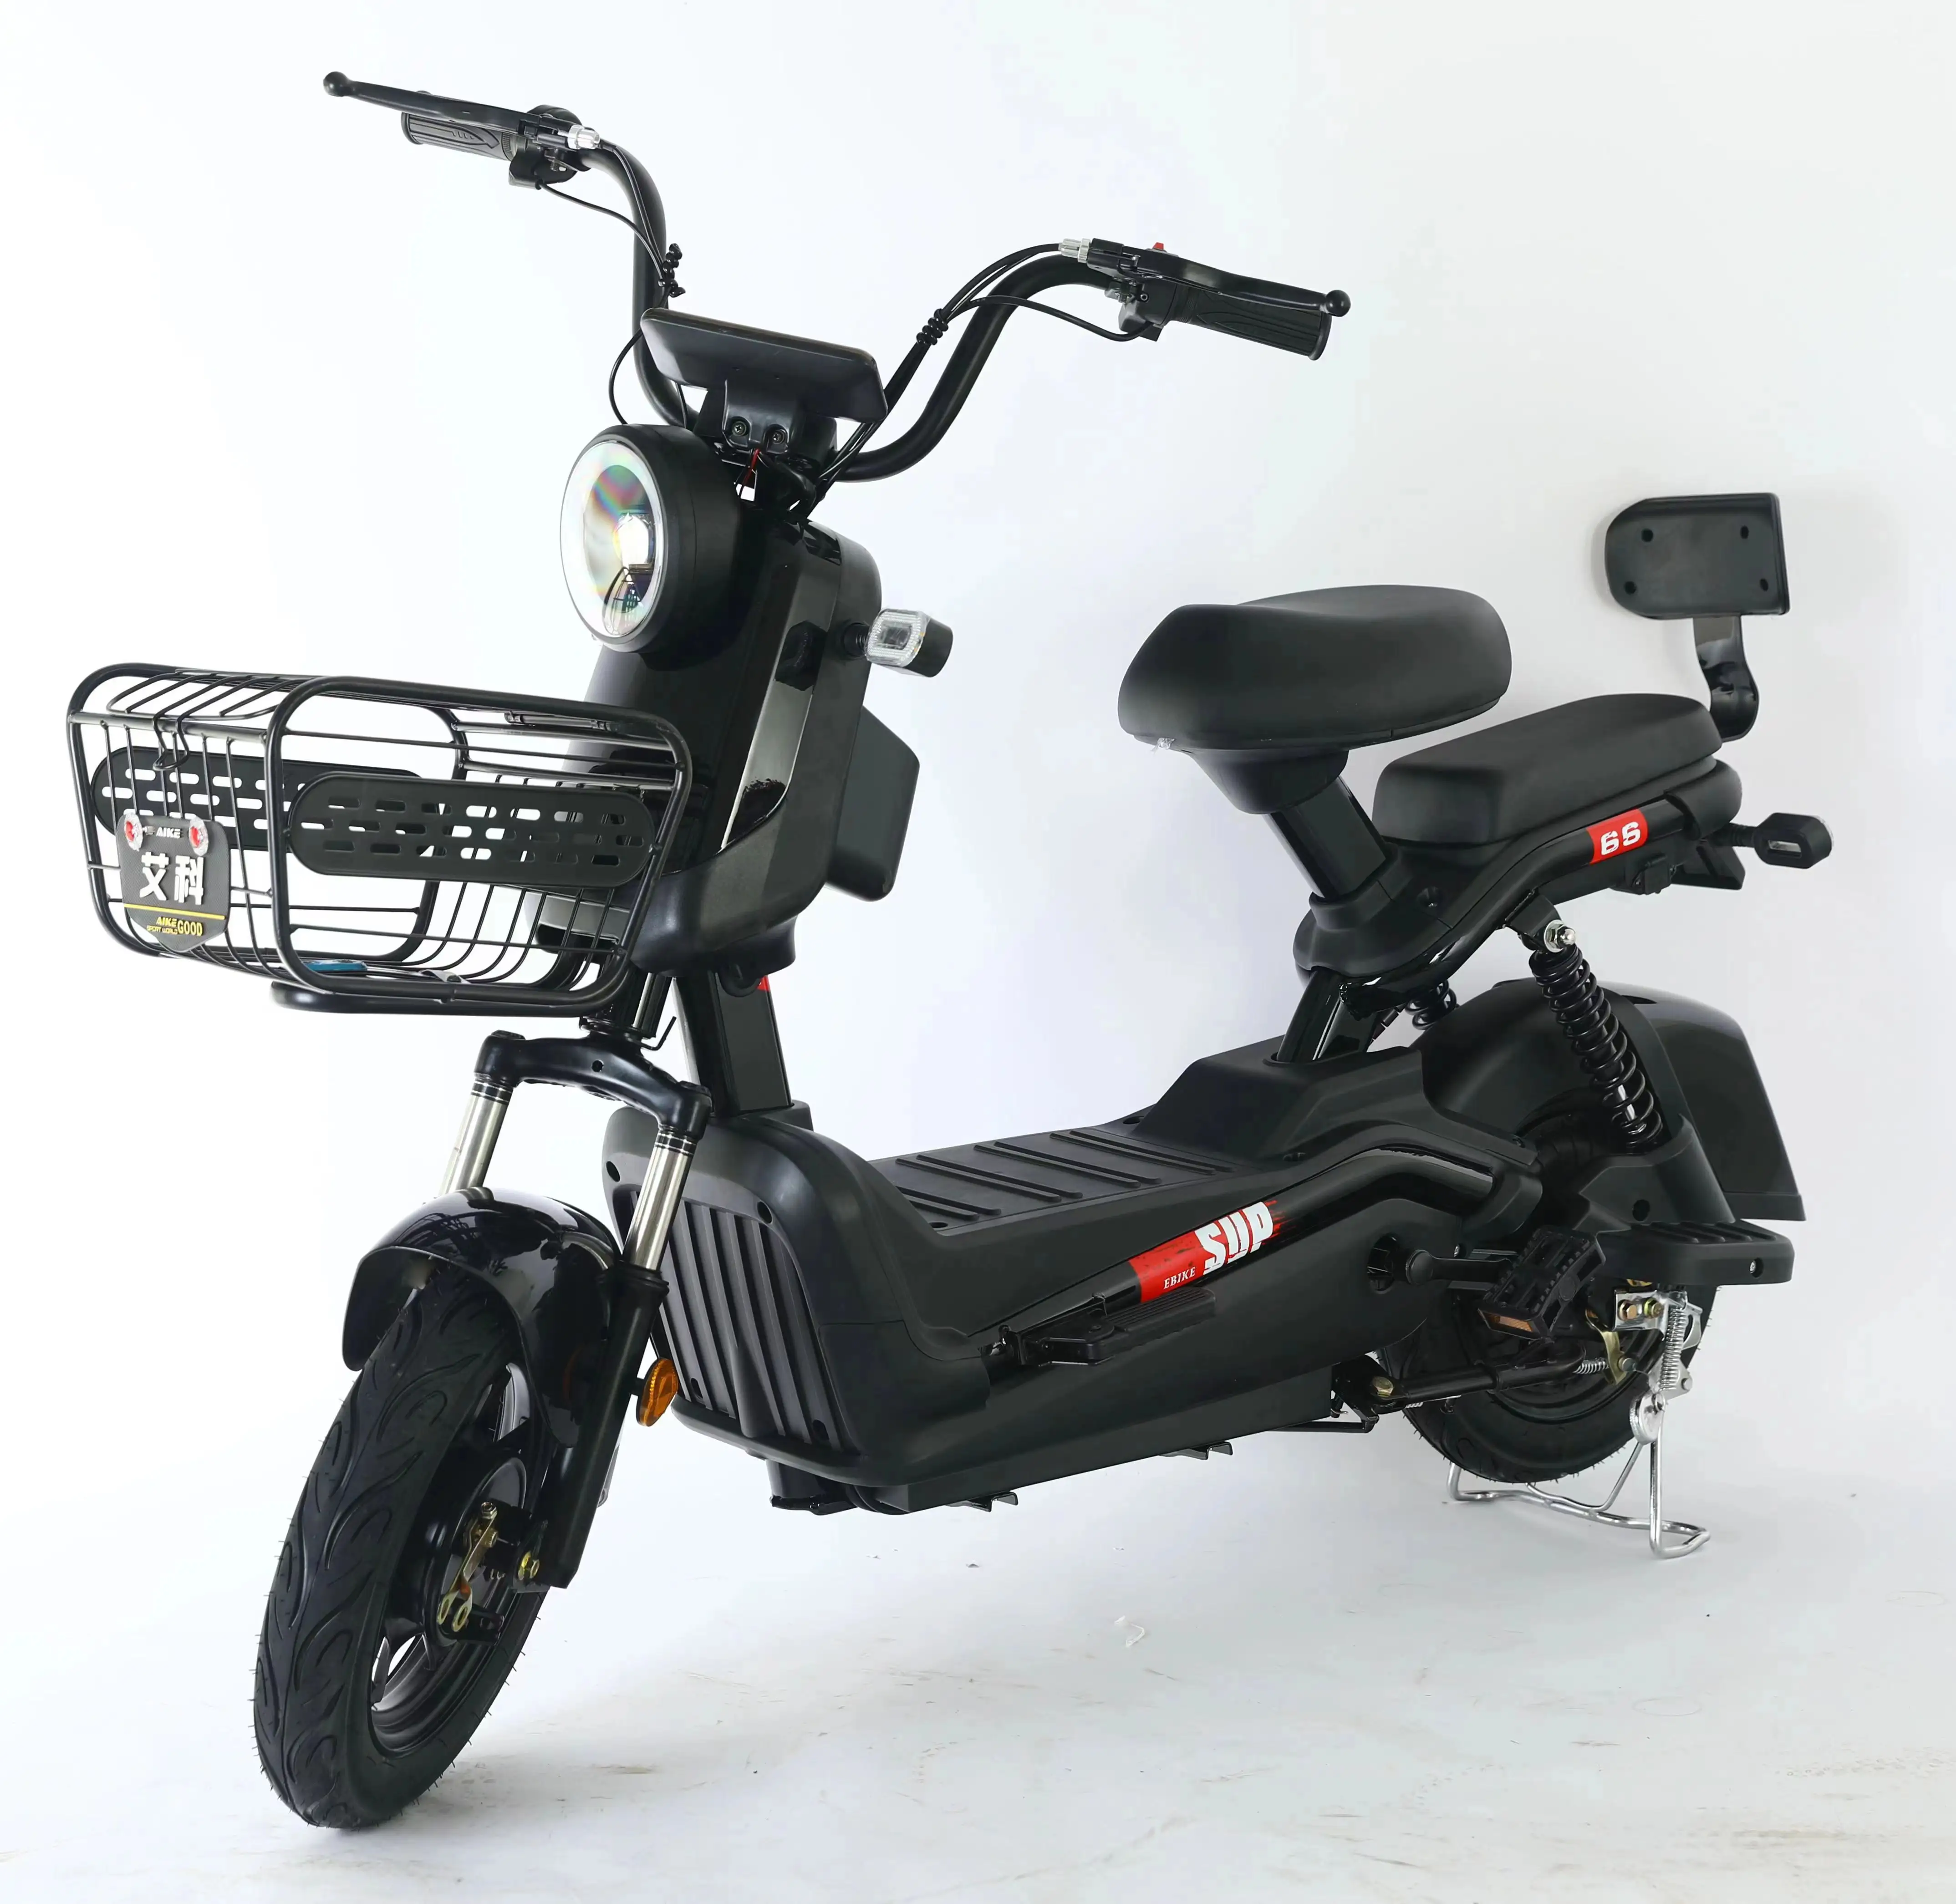 Vente chaude scooters électriques 450w 48v batteries au plomb deux roues scooter électrique vélo de ville électrique pour adultes ville